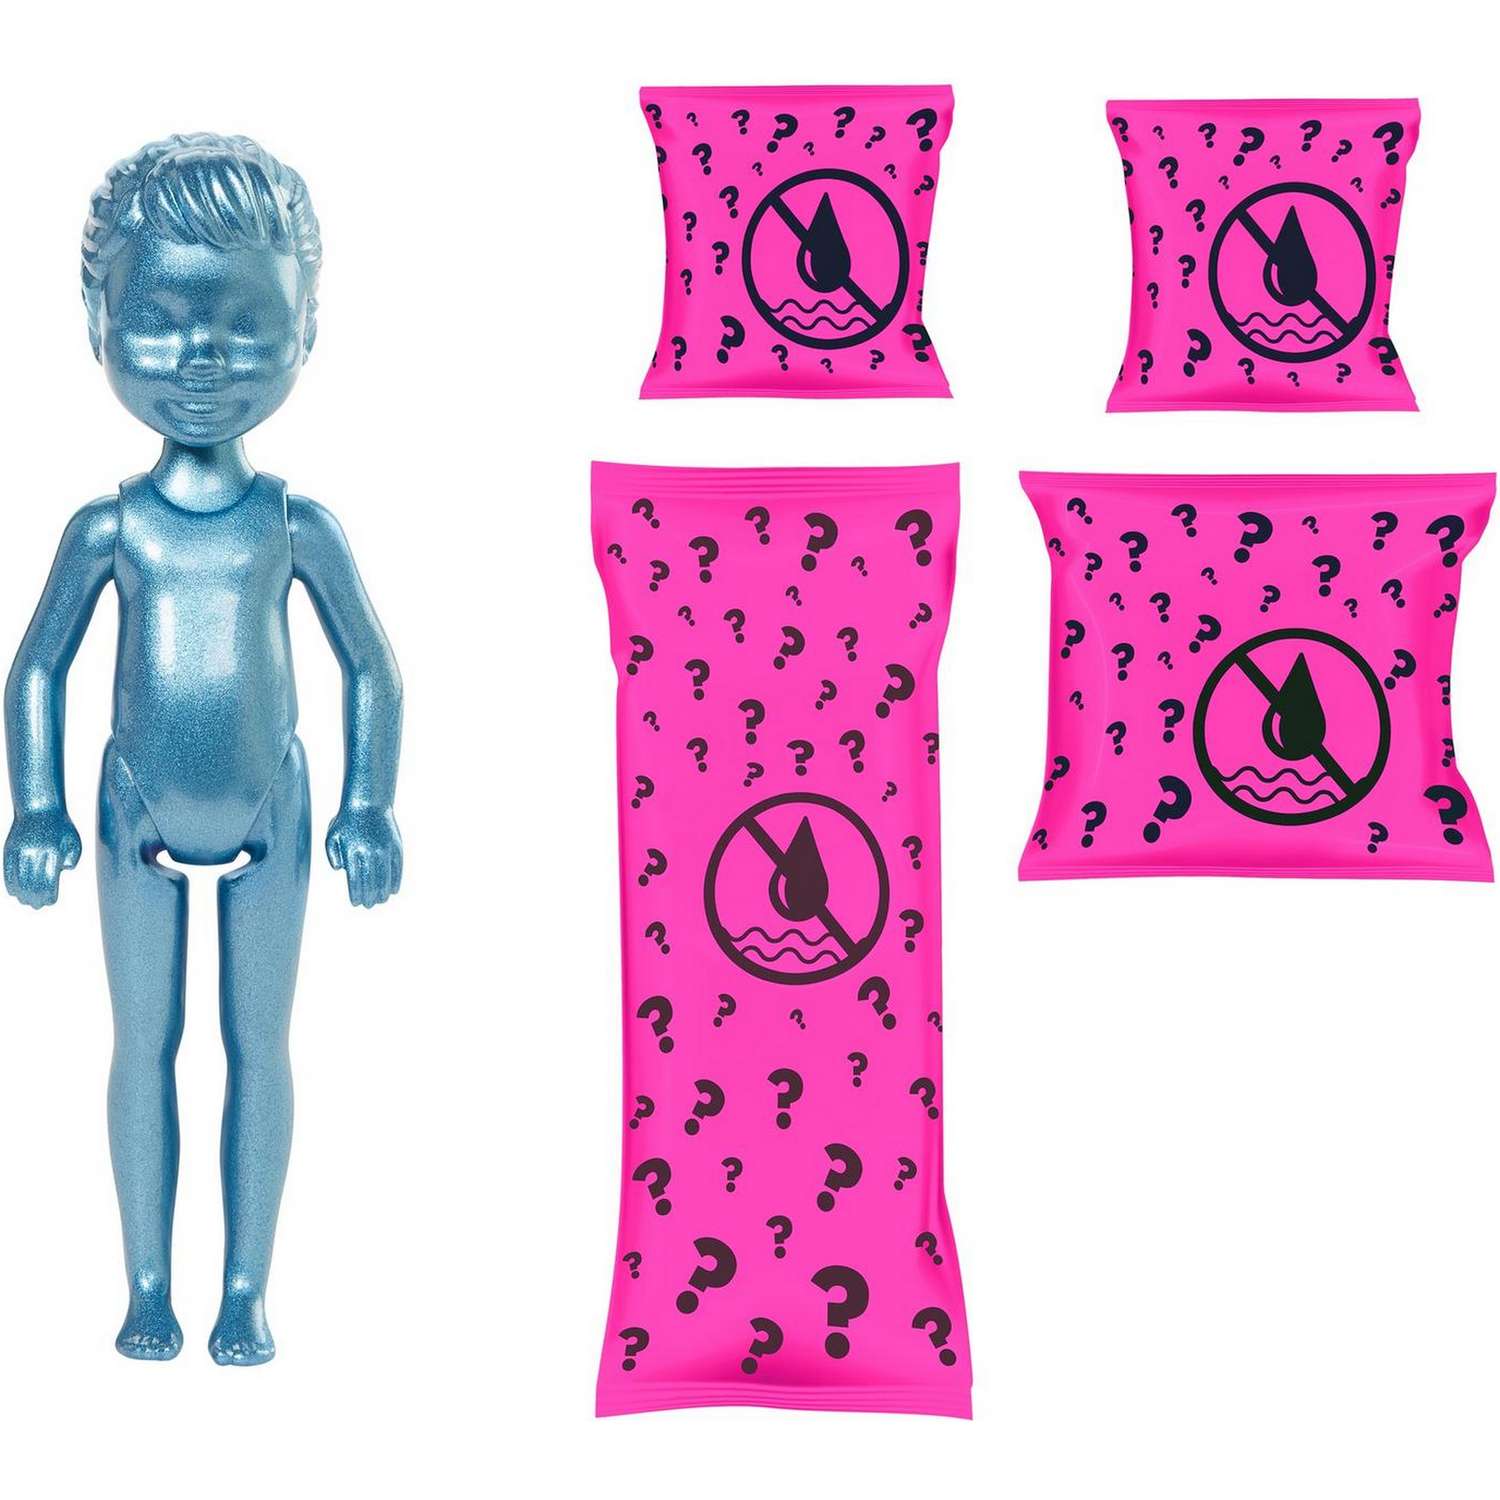 Набор Barbie Челси В1 кукла +аксессуары в непрозрачной упаковке (Сюрприз) GWC59 GTT23 - фото 2